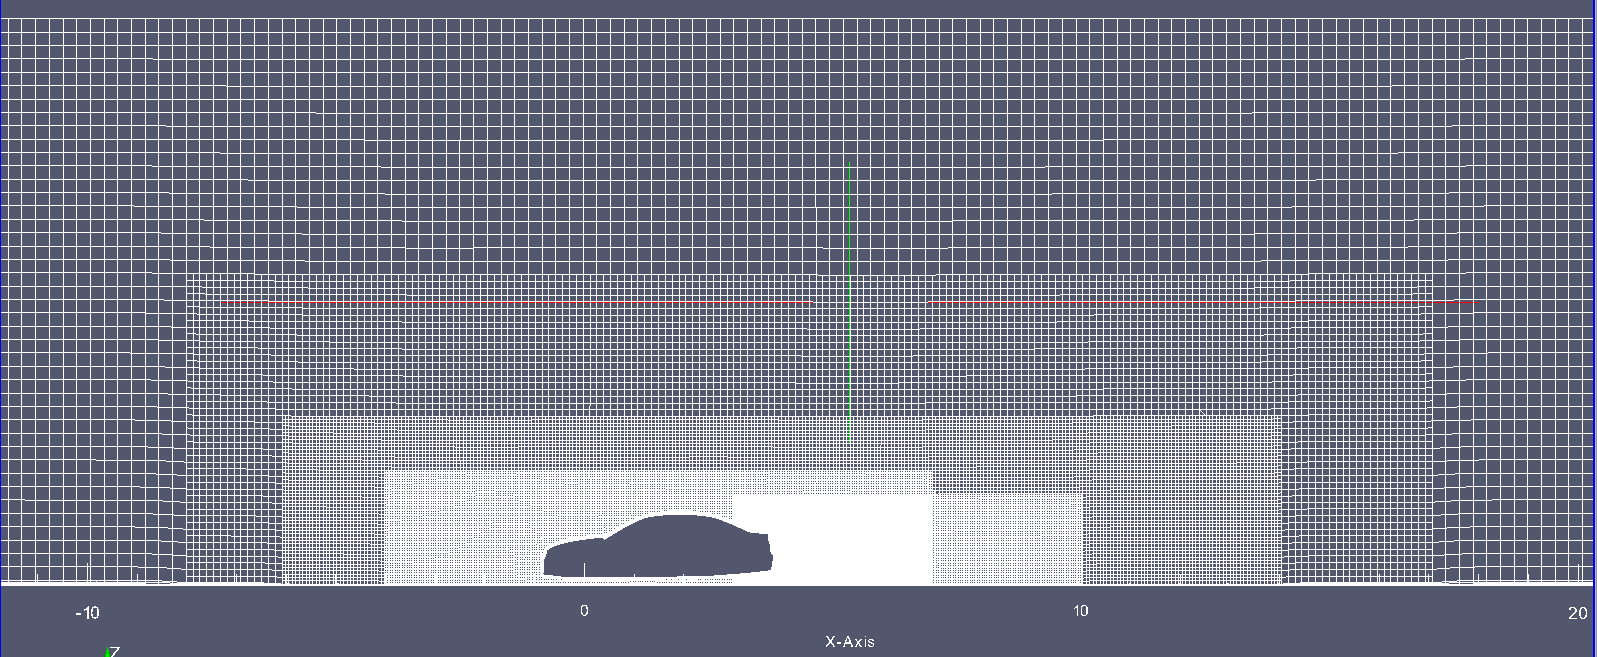 Σχήμα 2.7: Ζώνες πύκνωσης πλέγματος για τη διαμόρφωση Notchback στο επίπεδο συμμετρίας του οχήματος. Σχήμα 2.8: Ζώνες πύκνωσης πλέγματος για τη διαμόρφωση Notchback στο επίπεδο του δρόμου.